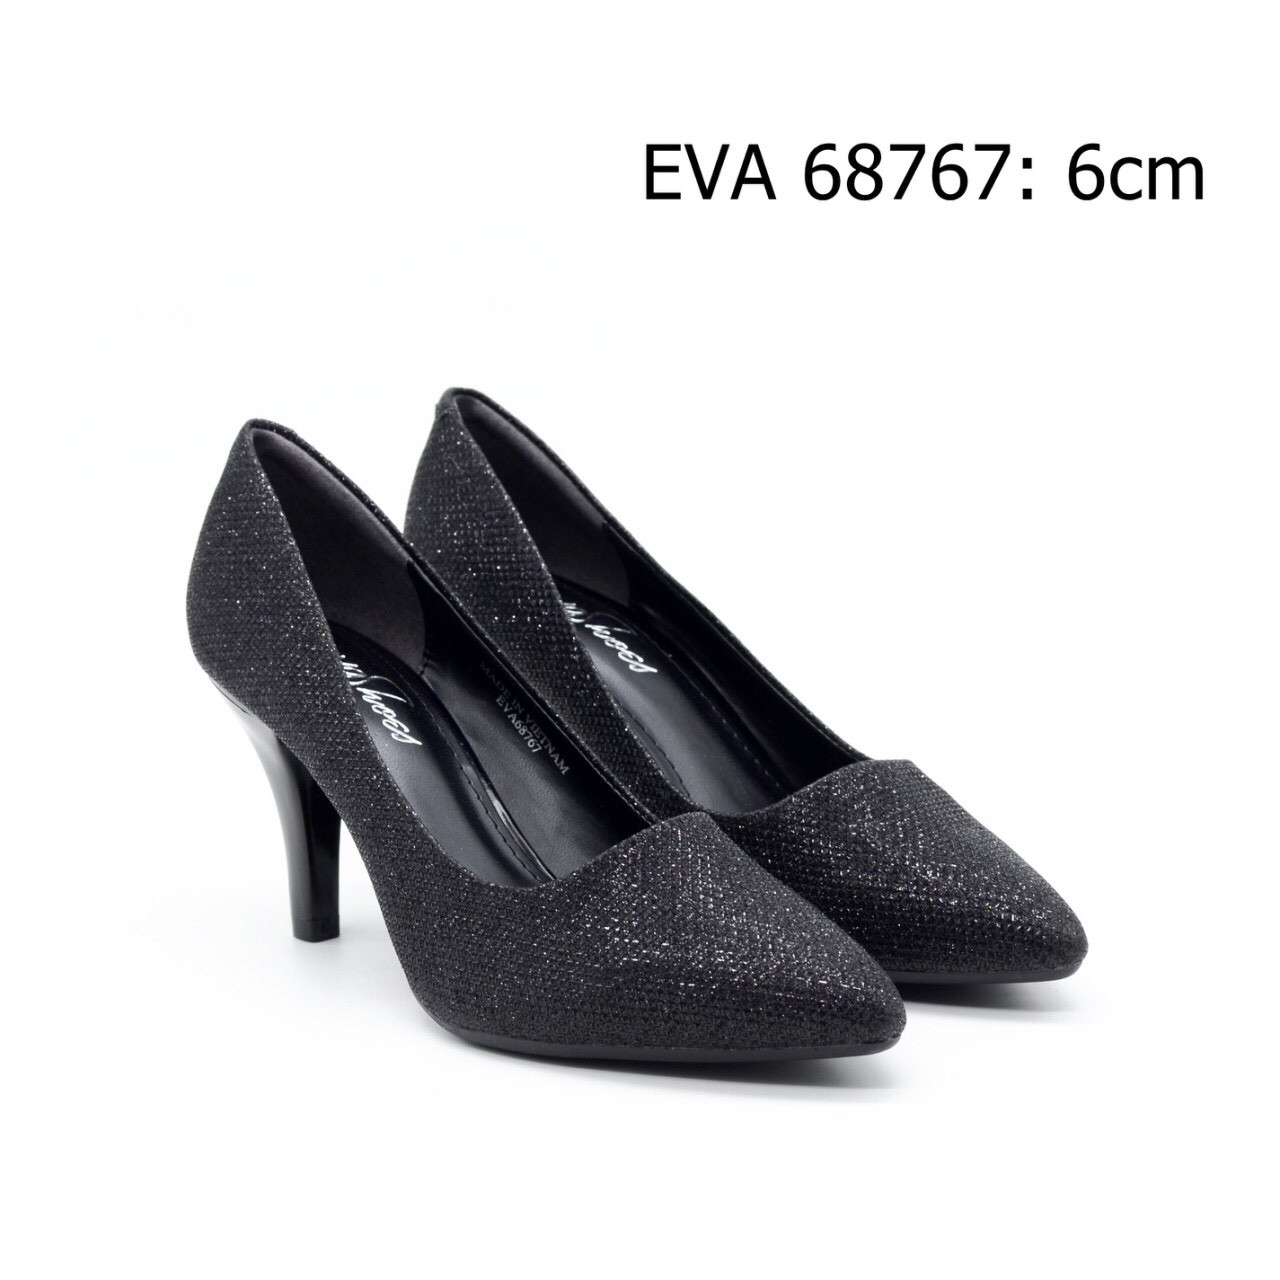 Giày bít mũi trang nhã EVA68767 thiết kế kim tuyến nổi bật, bắt mắt.